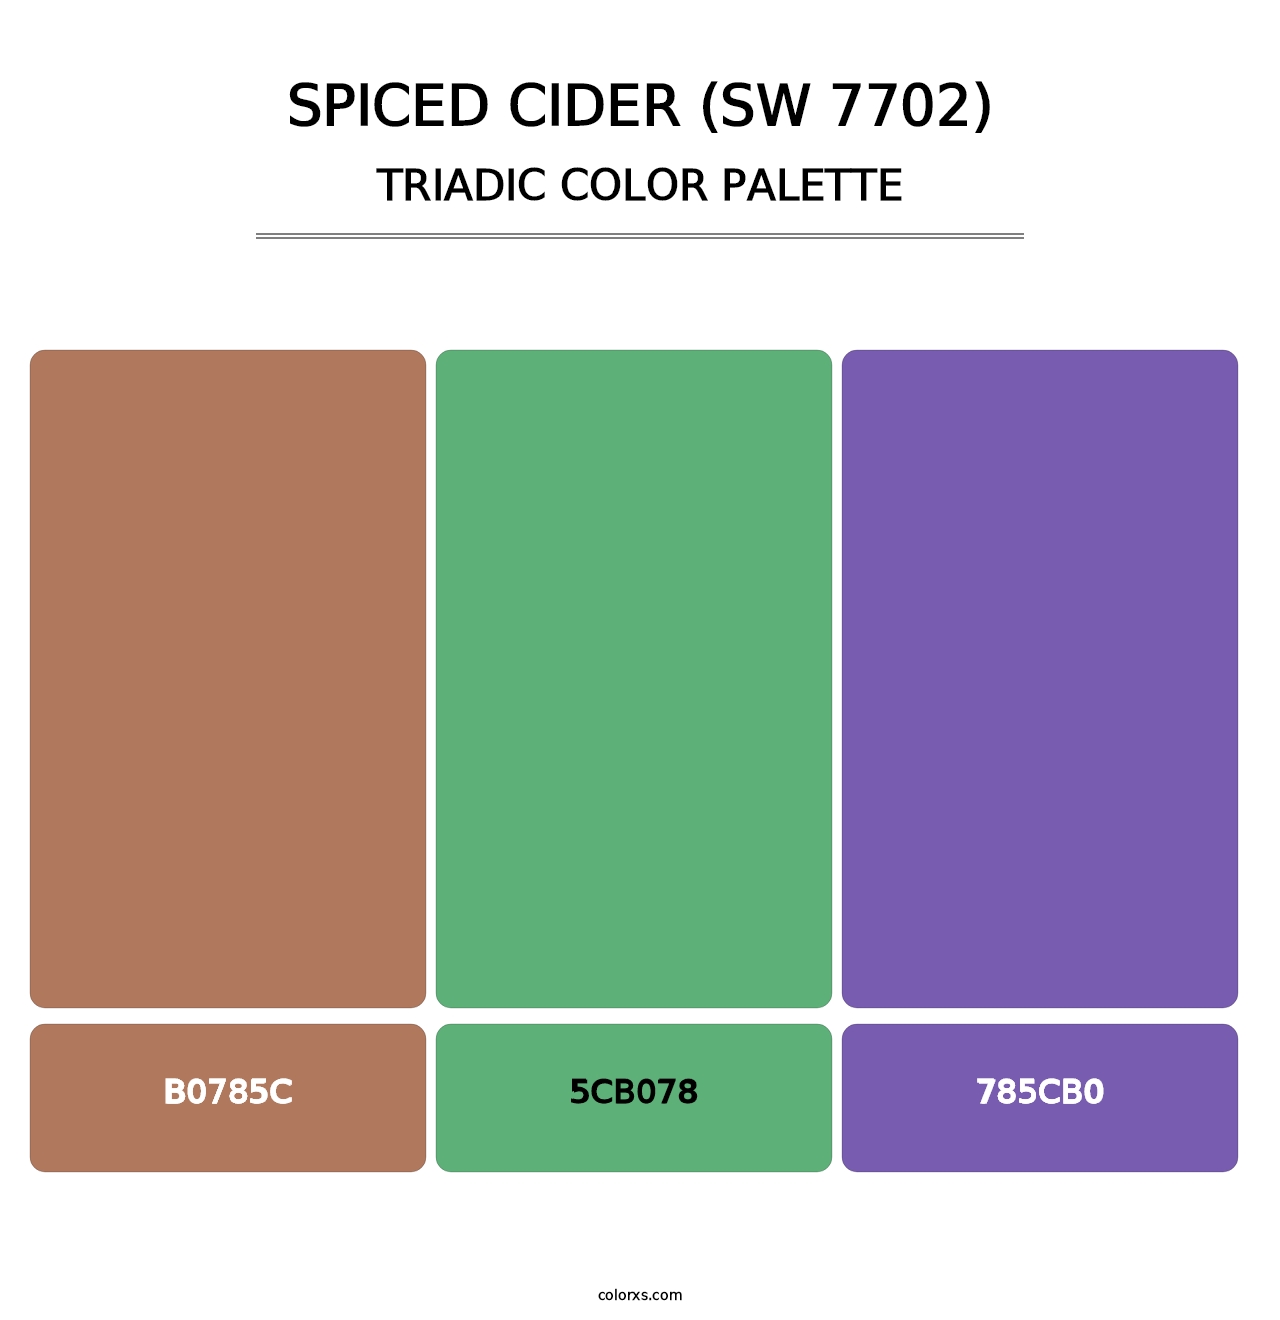 Spiced Cider (SW 7702) - Triadic Color Palette